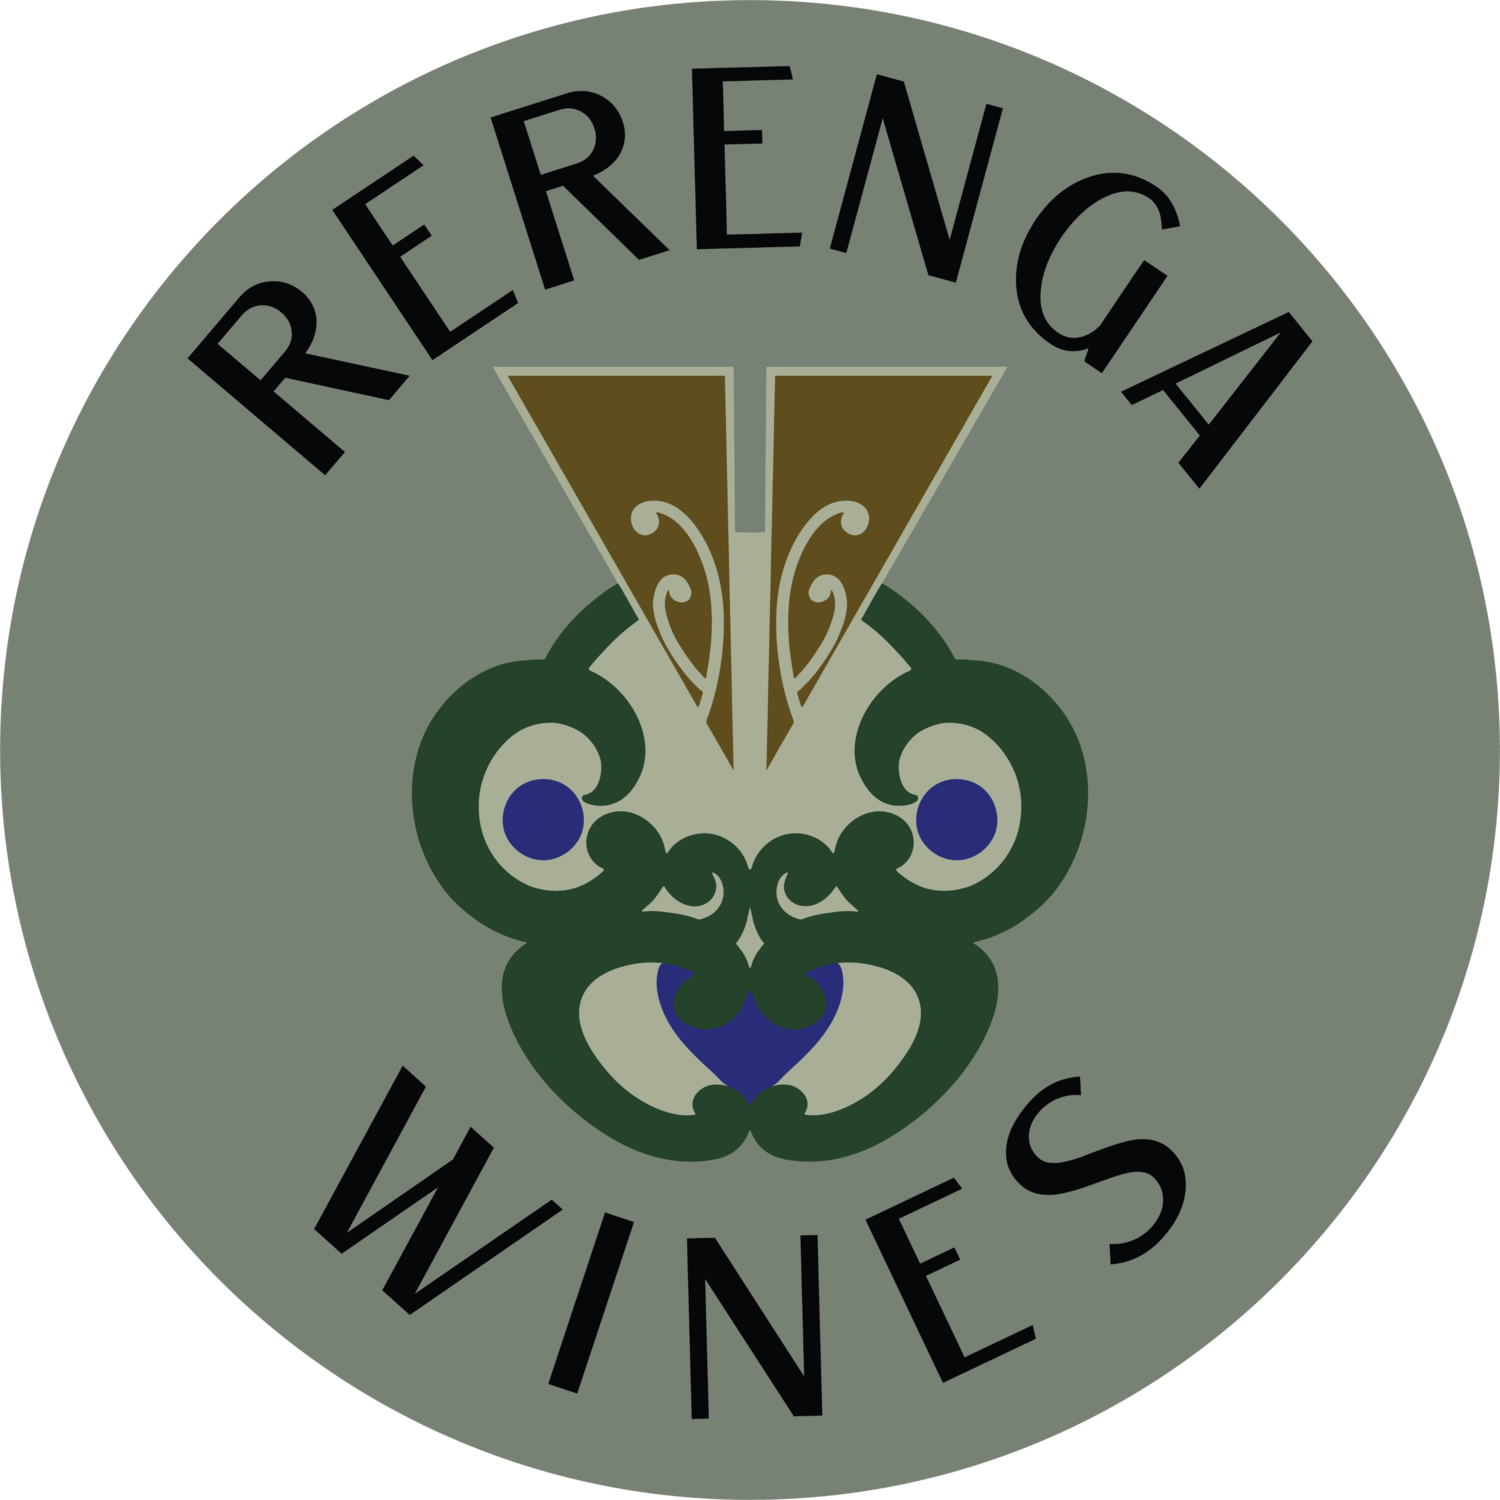 Rerenga Wines